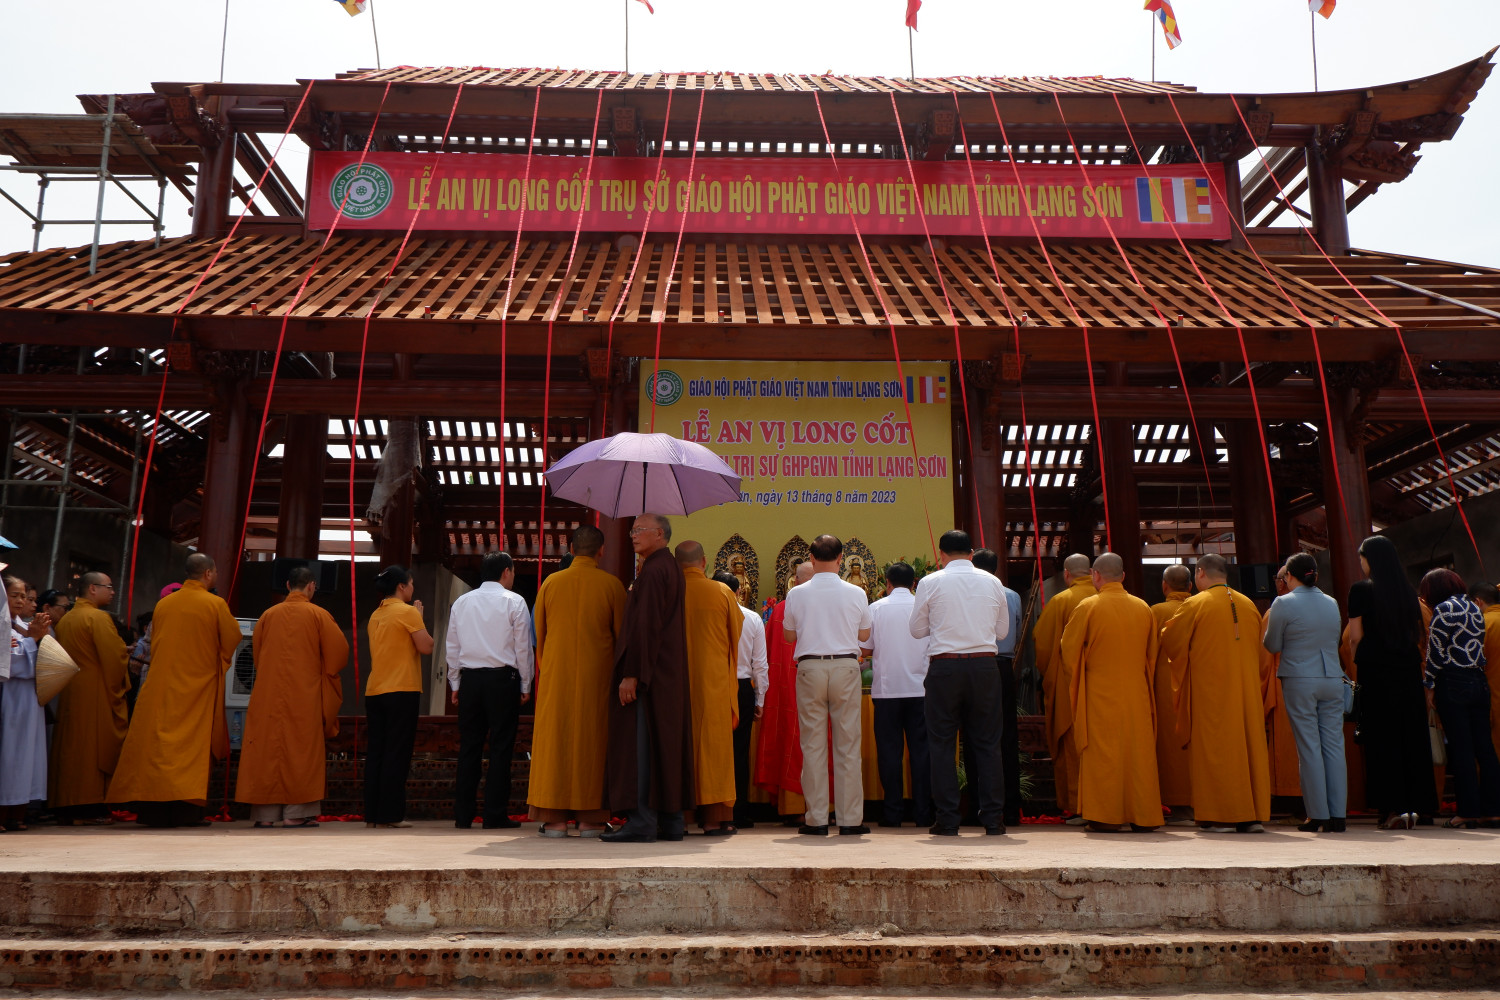 Lễ an vị long cốt Trụ sở Ban Trị sự Phật giáo tỉnh Lạng Sơn